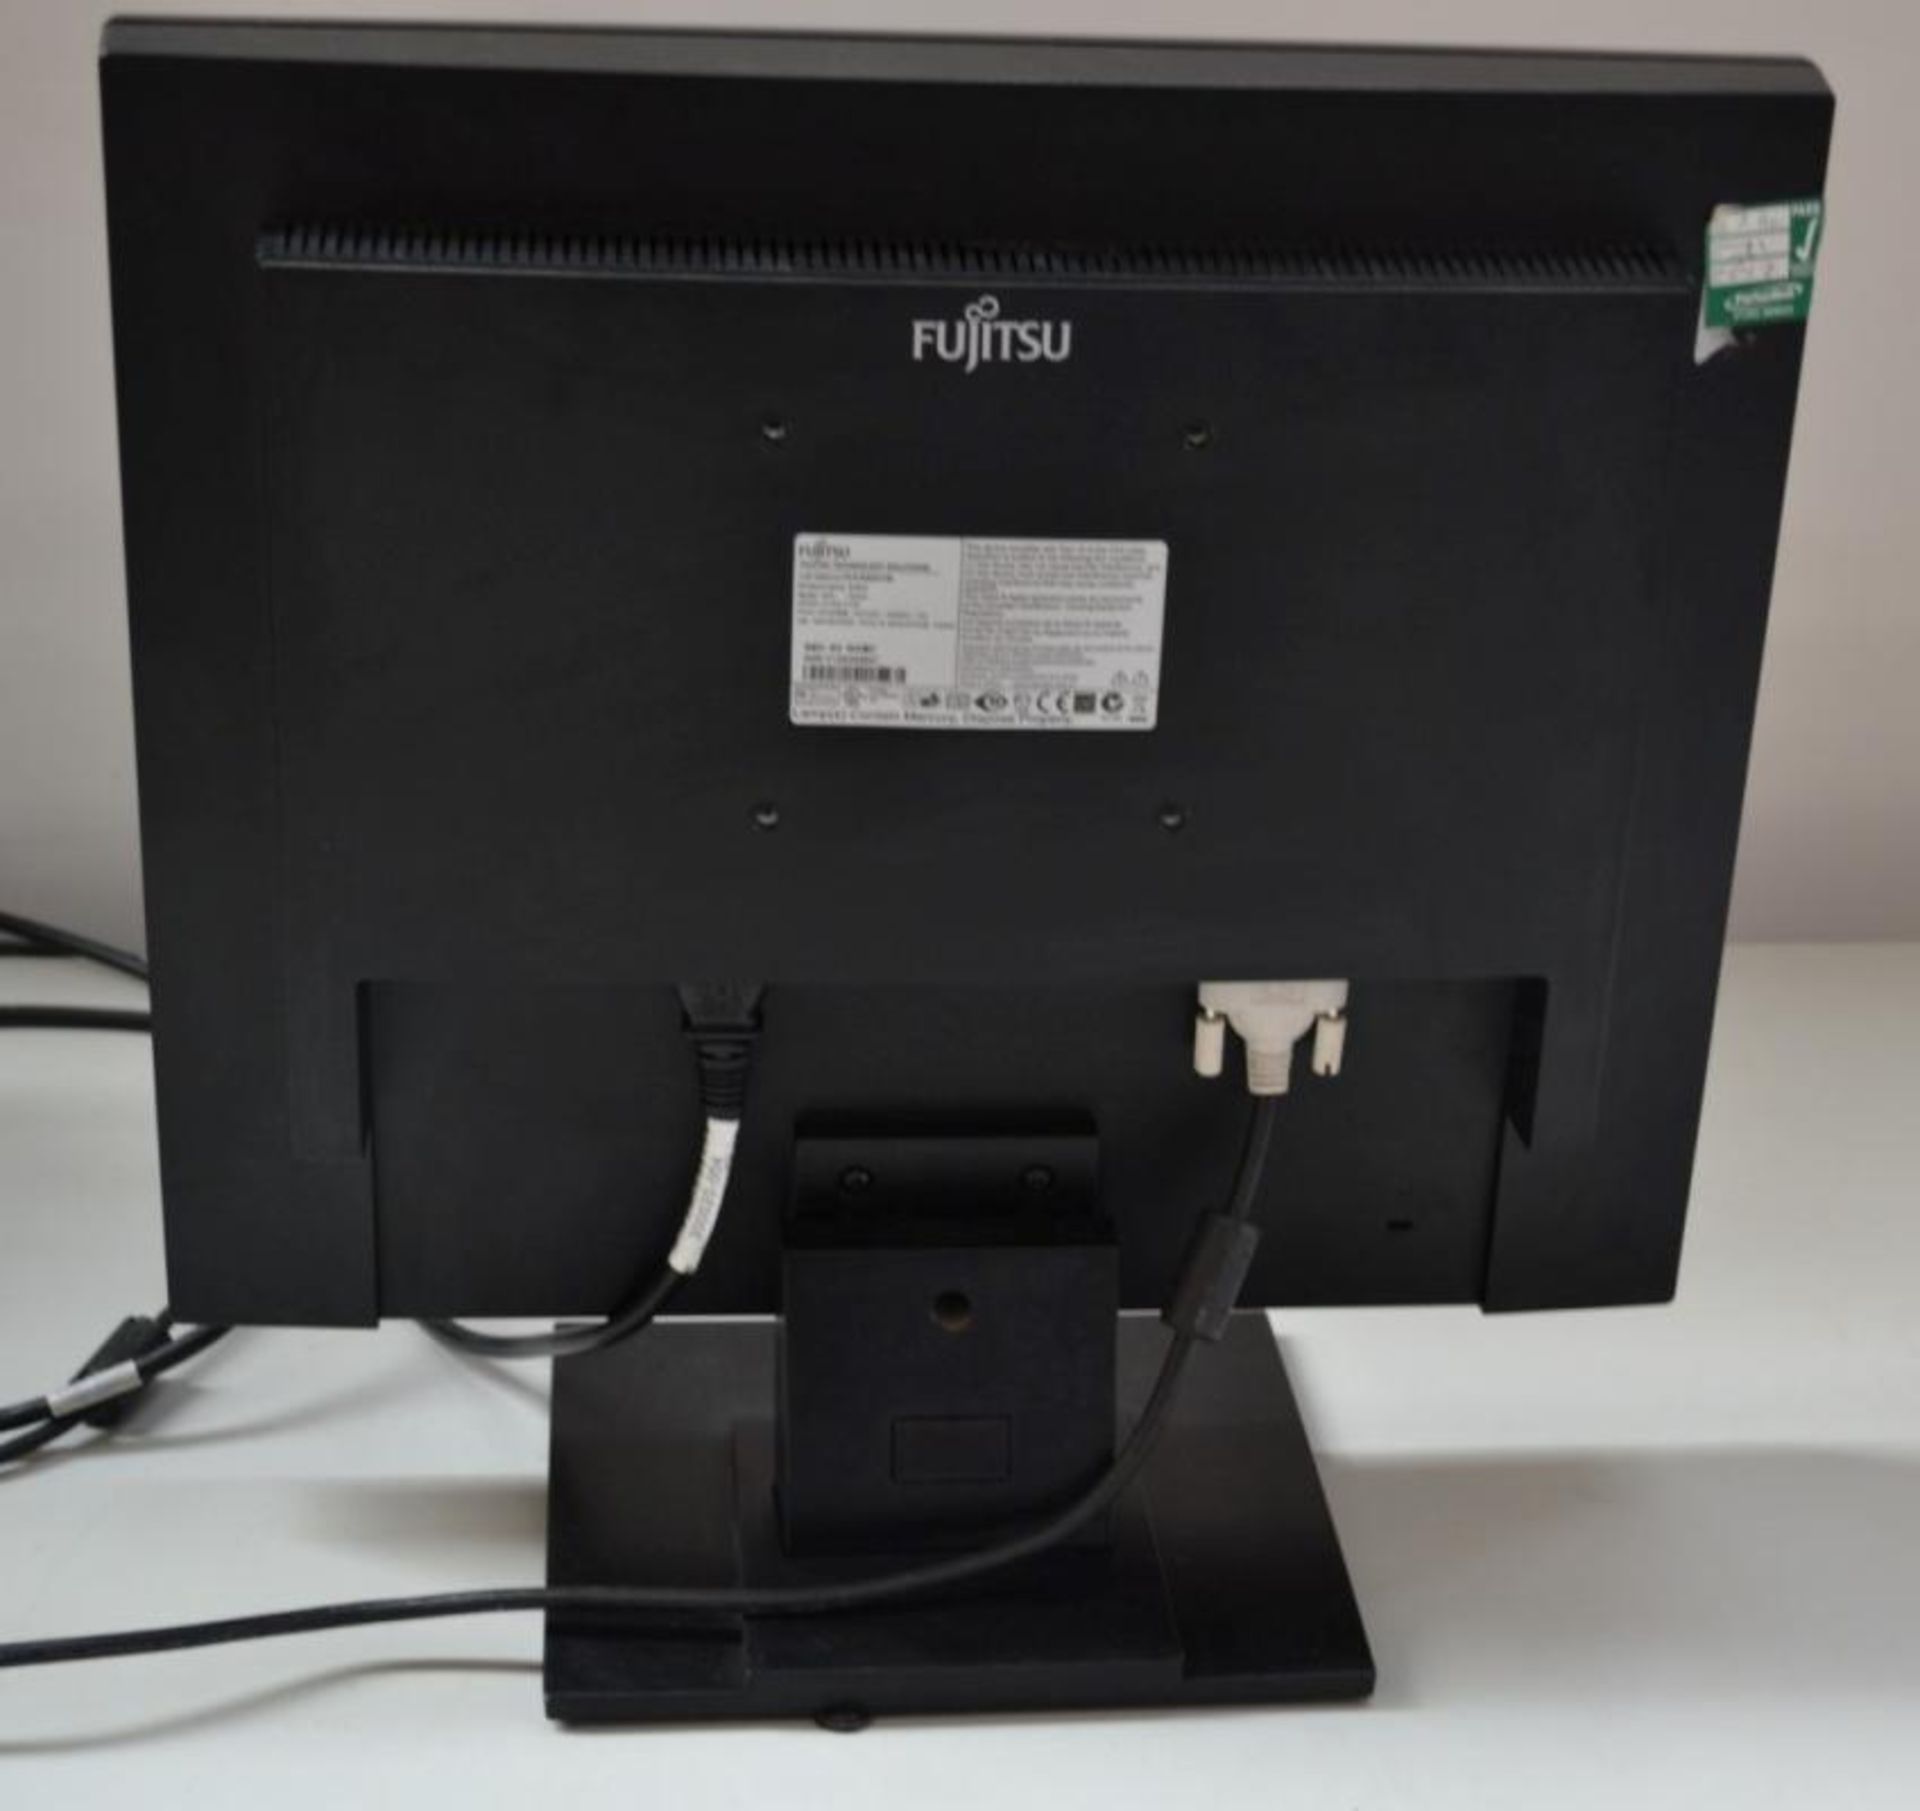 1 x Fujitsu E19-5 19-inch TFT LCD PC Monitor - Ref J2261 - CL394 - Location: Altrincham WA14 - HKPal - Image 2 of 3